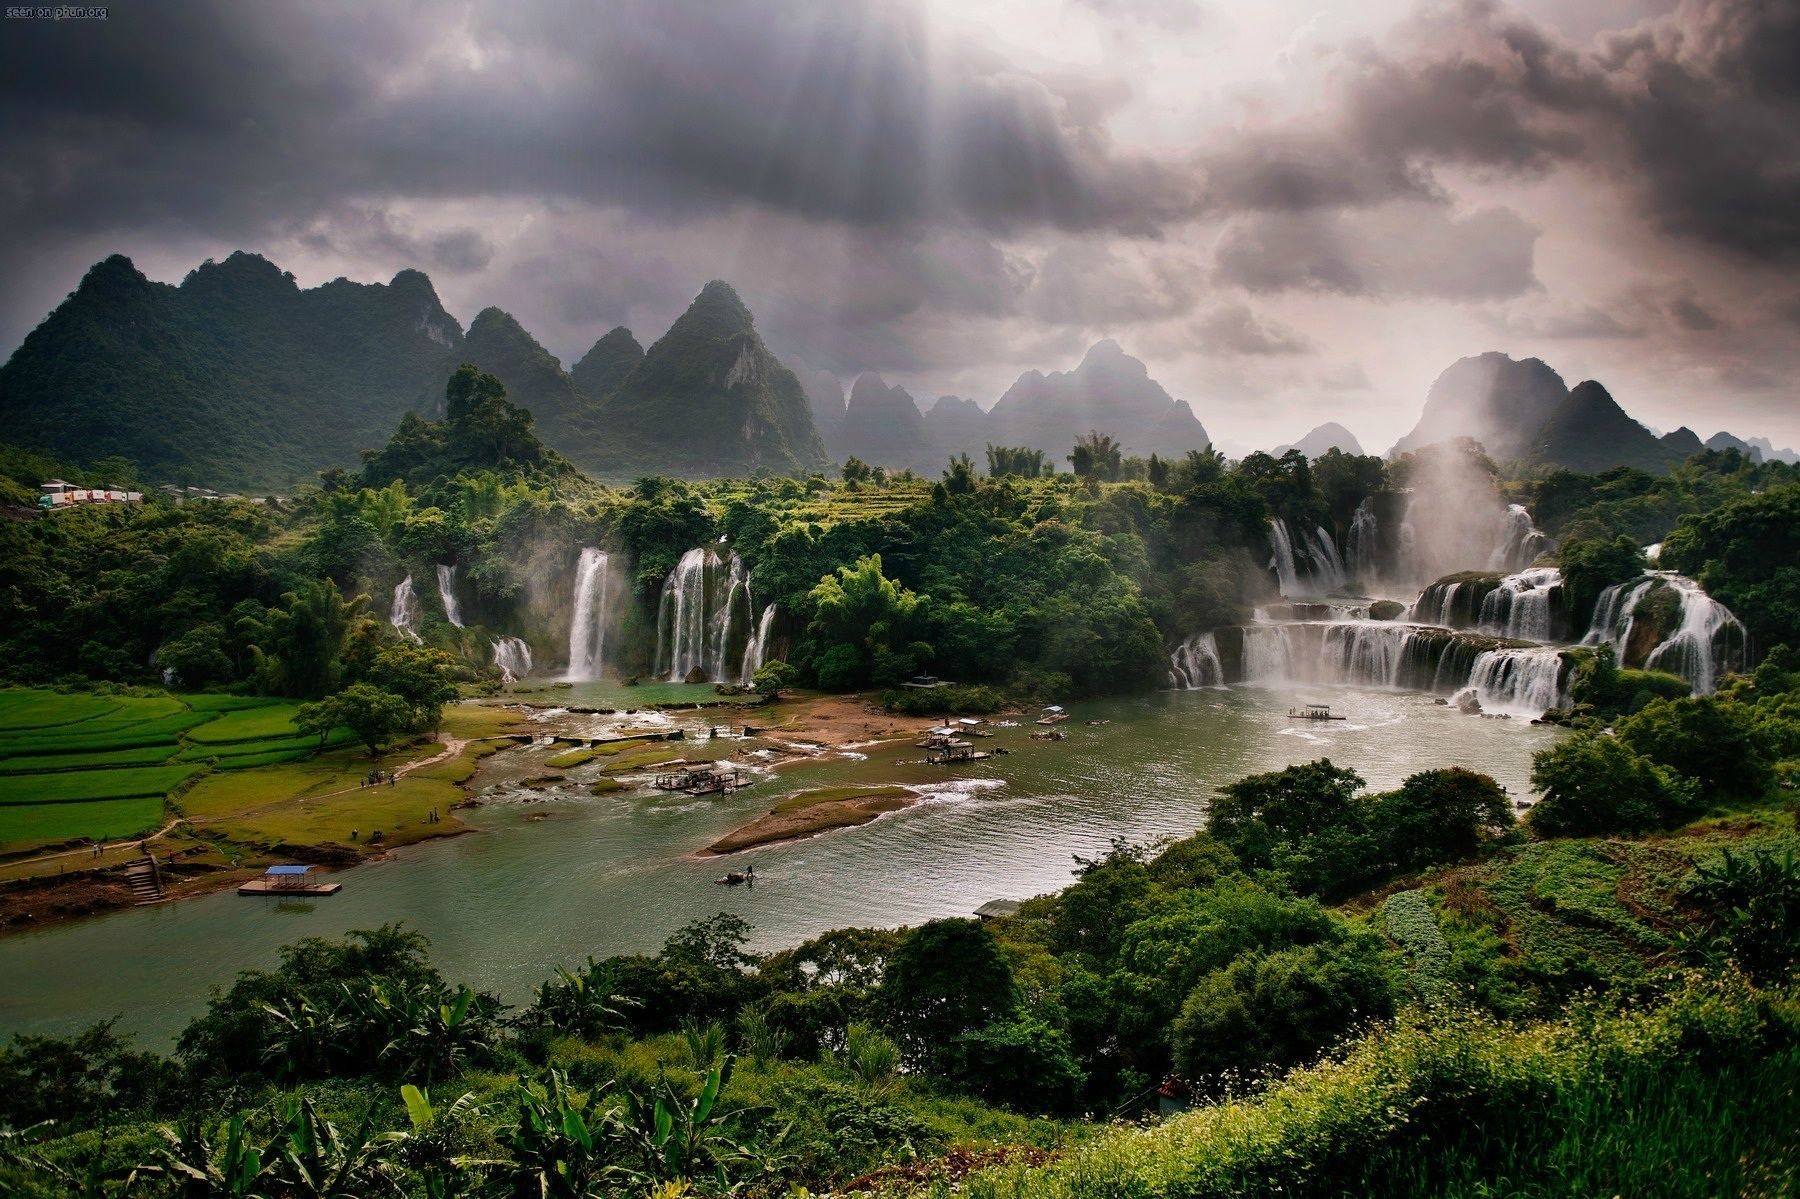 نمای هوایی شاهکار از سرزمین جنگلی با آبشار های متعدد